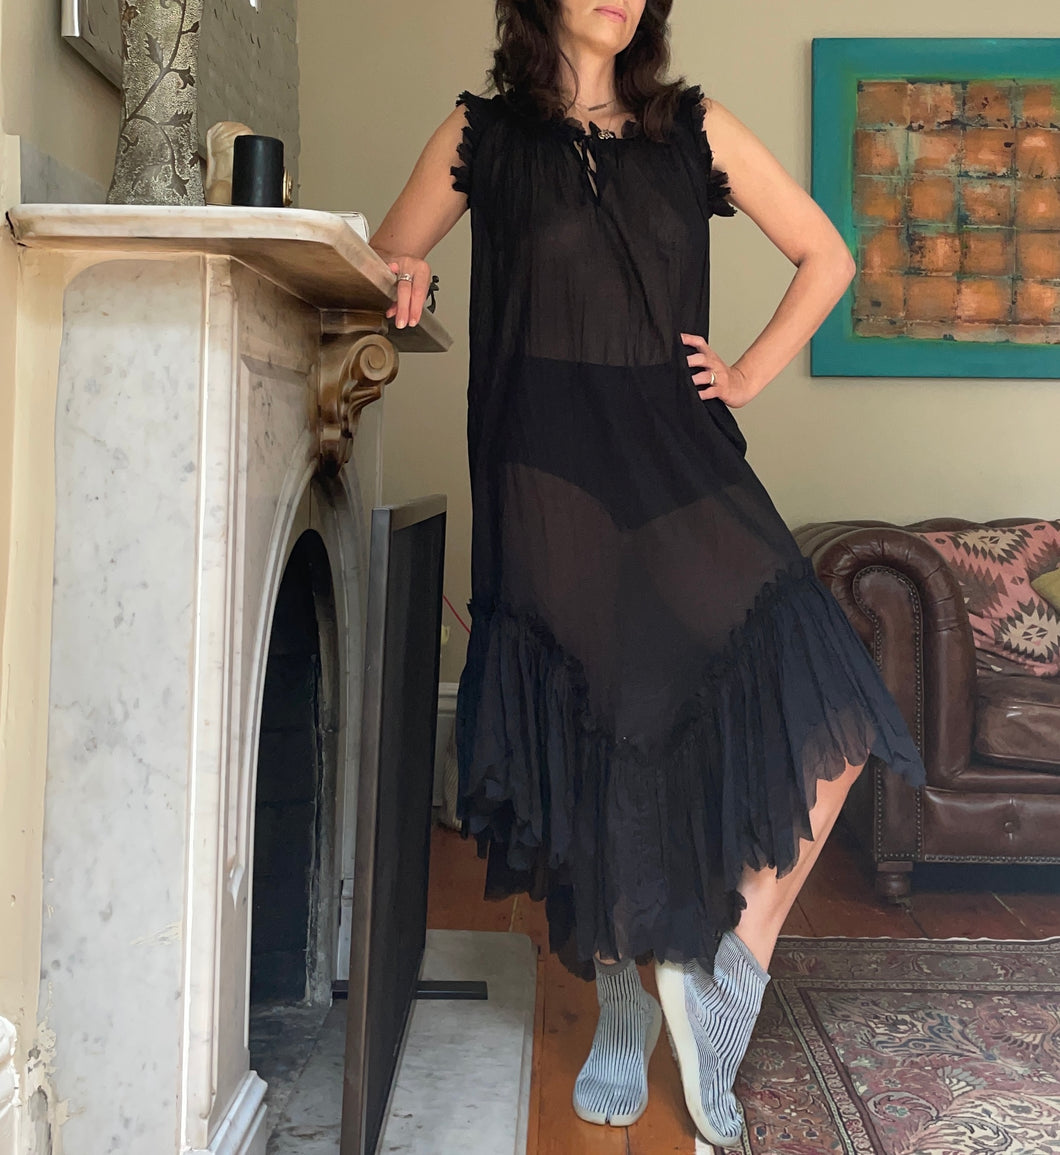 Jean Paul Gaultier | Sheer Black Dress